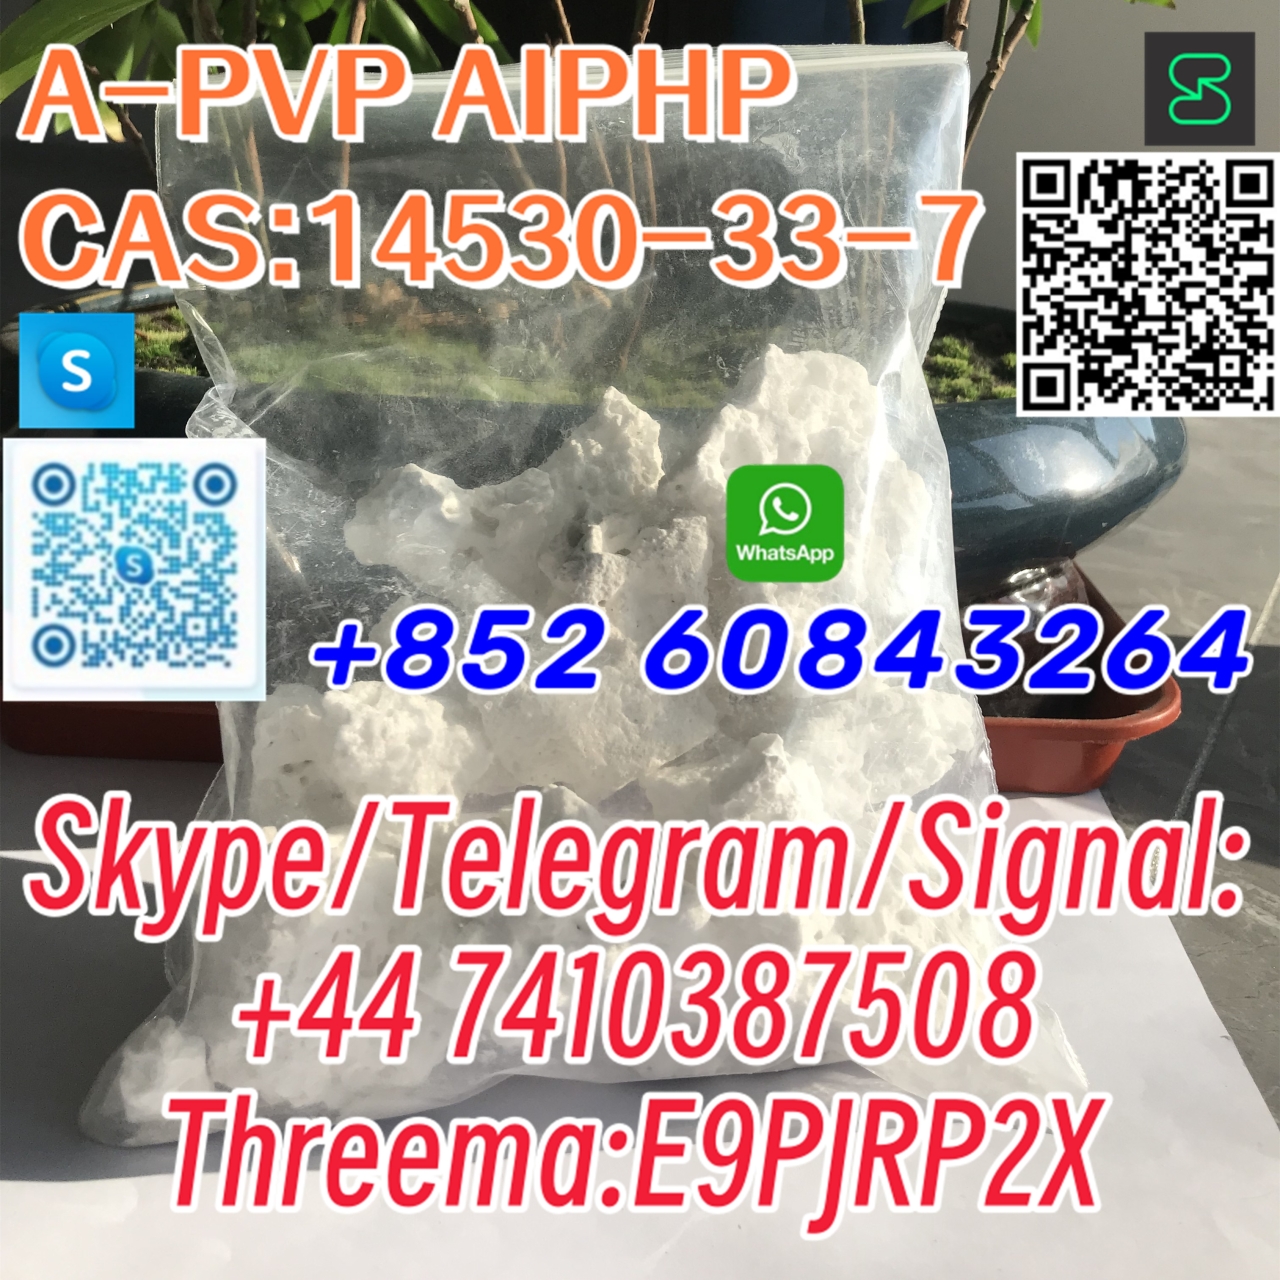 A-PVP AIPHP CAS:14530-33-7 Skype/Telegram/Signal: +44 7410387508 Threema:E9PJRP2X-1 24.04.2024 - A-PVP AIPHP  CAS:14530-33-7  Skype/Telegram/Signal:
+44 7410387508
Threema:E9PJRP2X